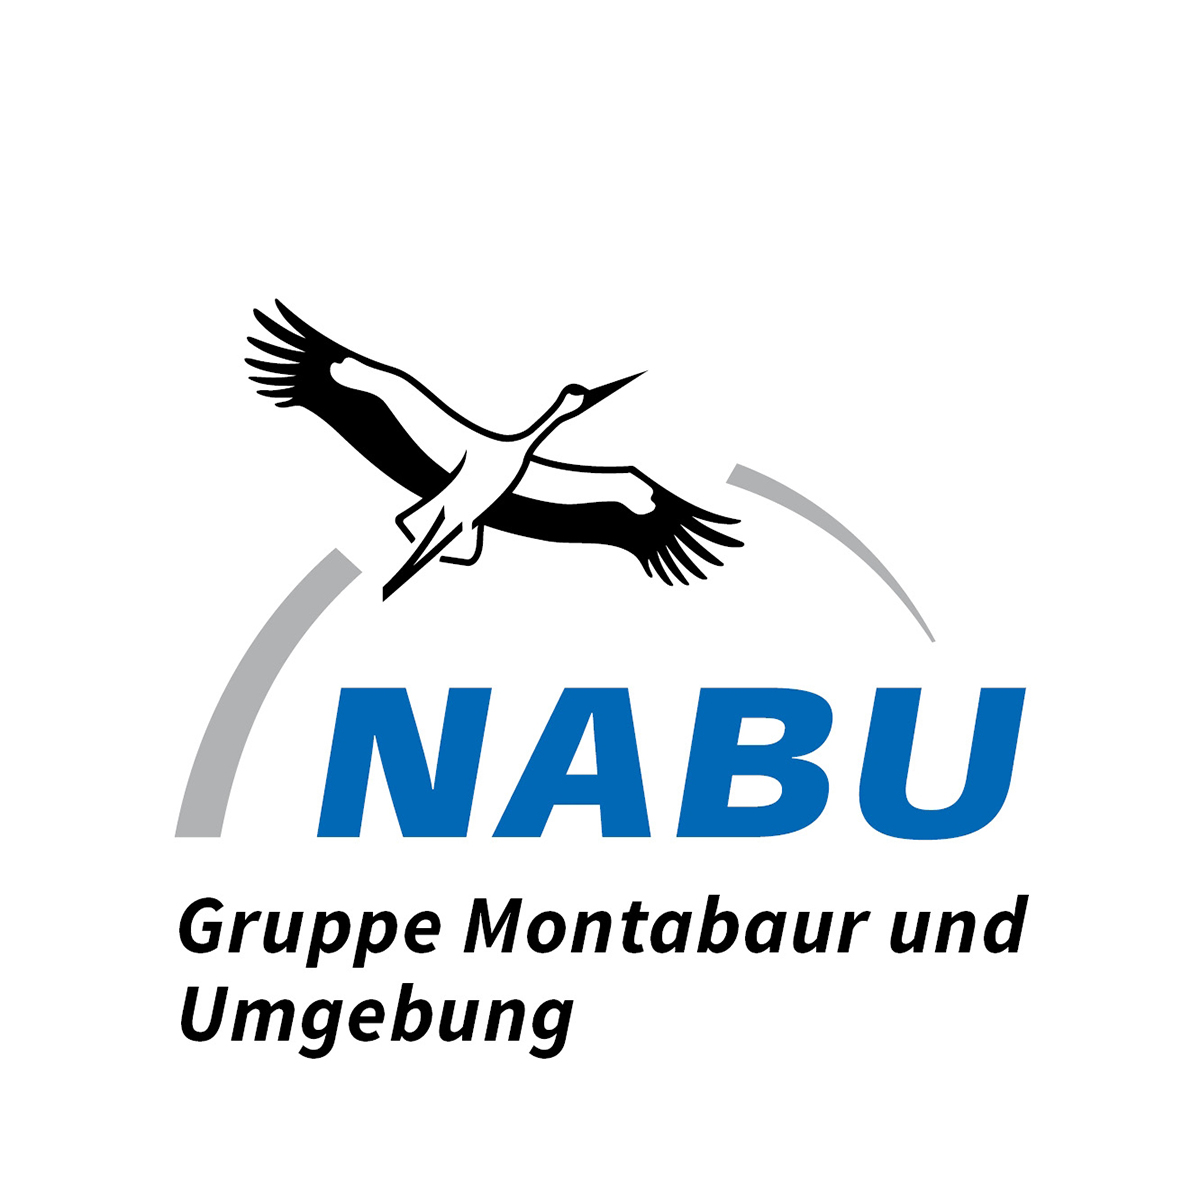 NABU Montabaur sucht Unterstützung für den Naturschutz